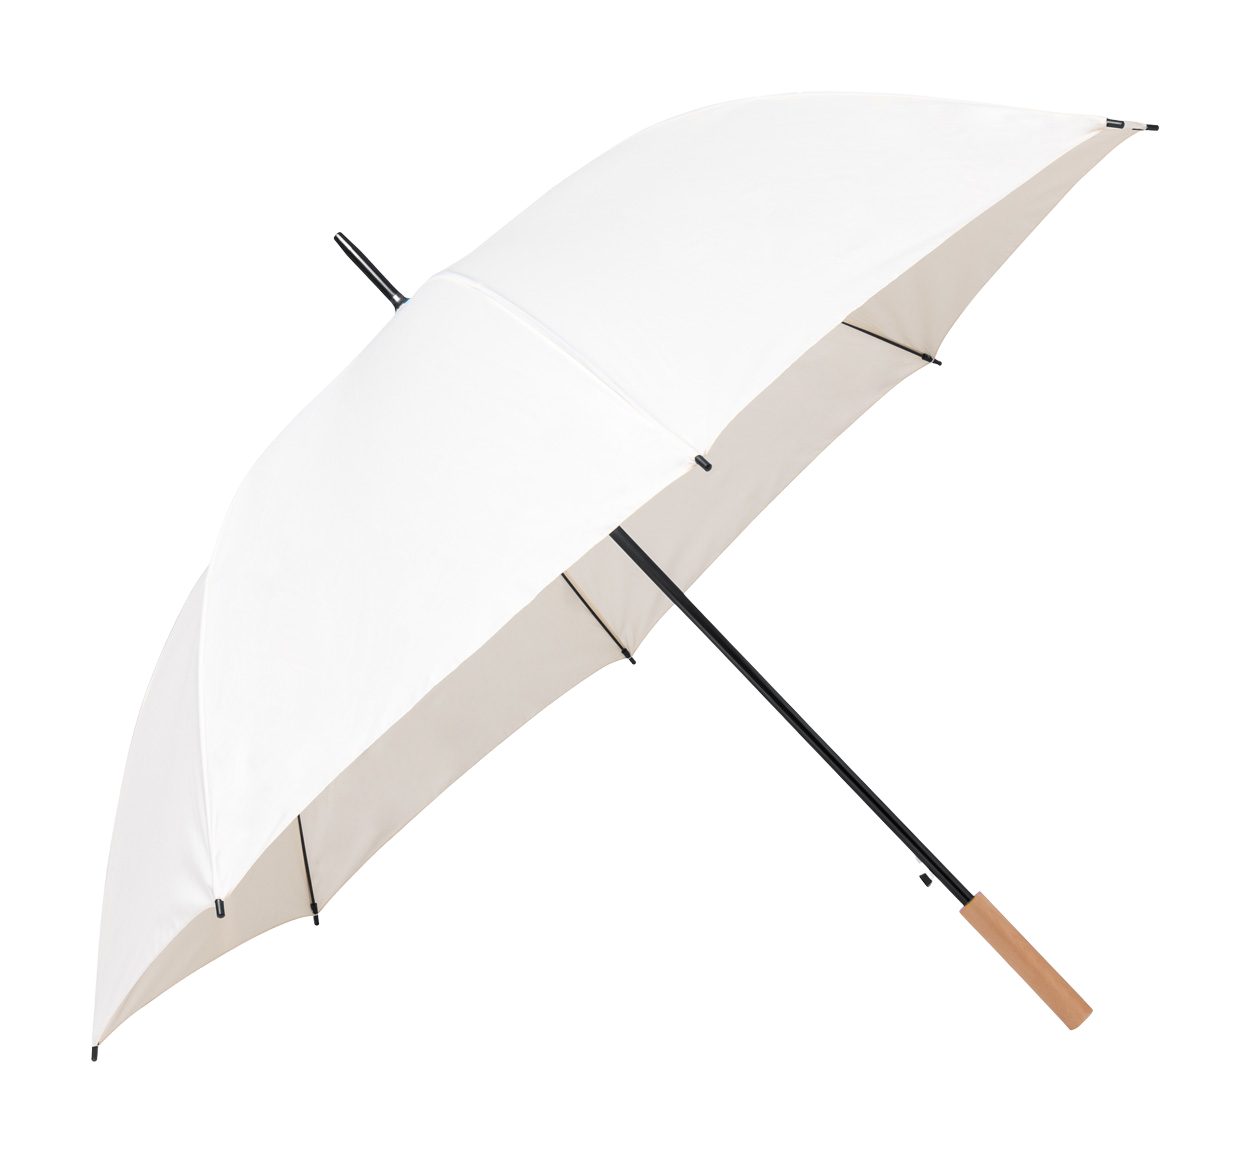 Tinnar XL esernyő céges reklámajándék